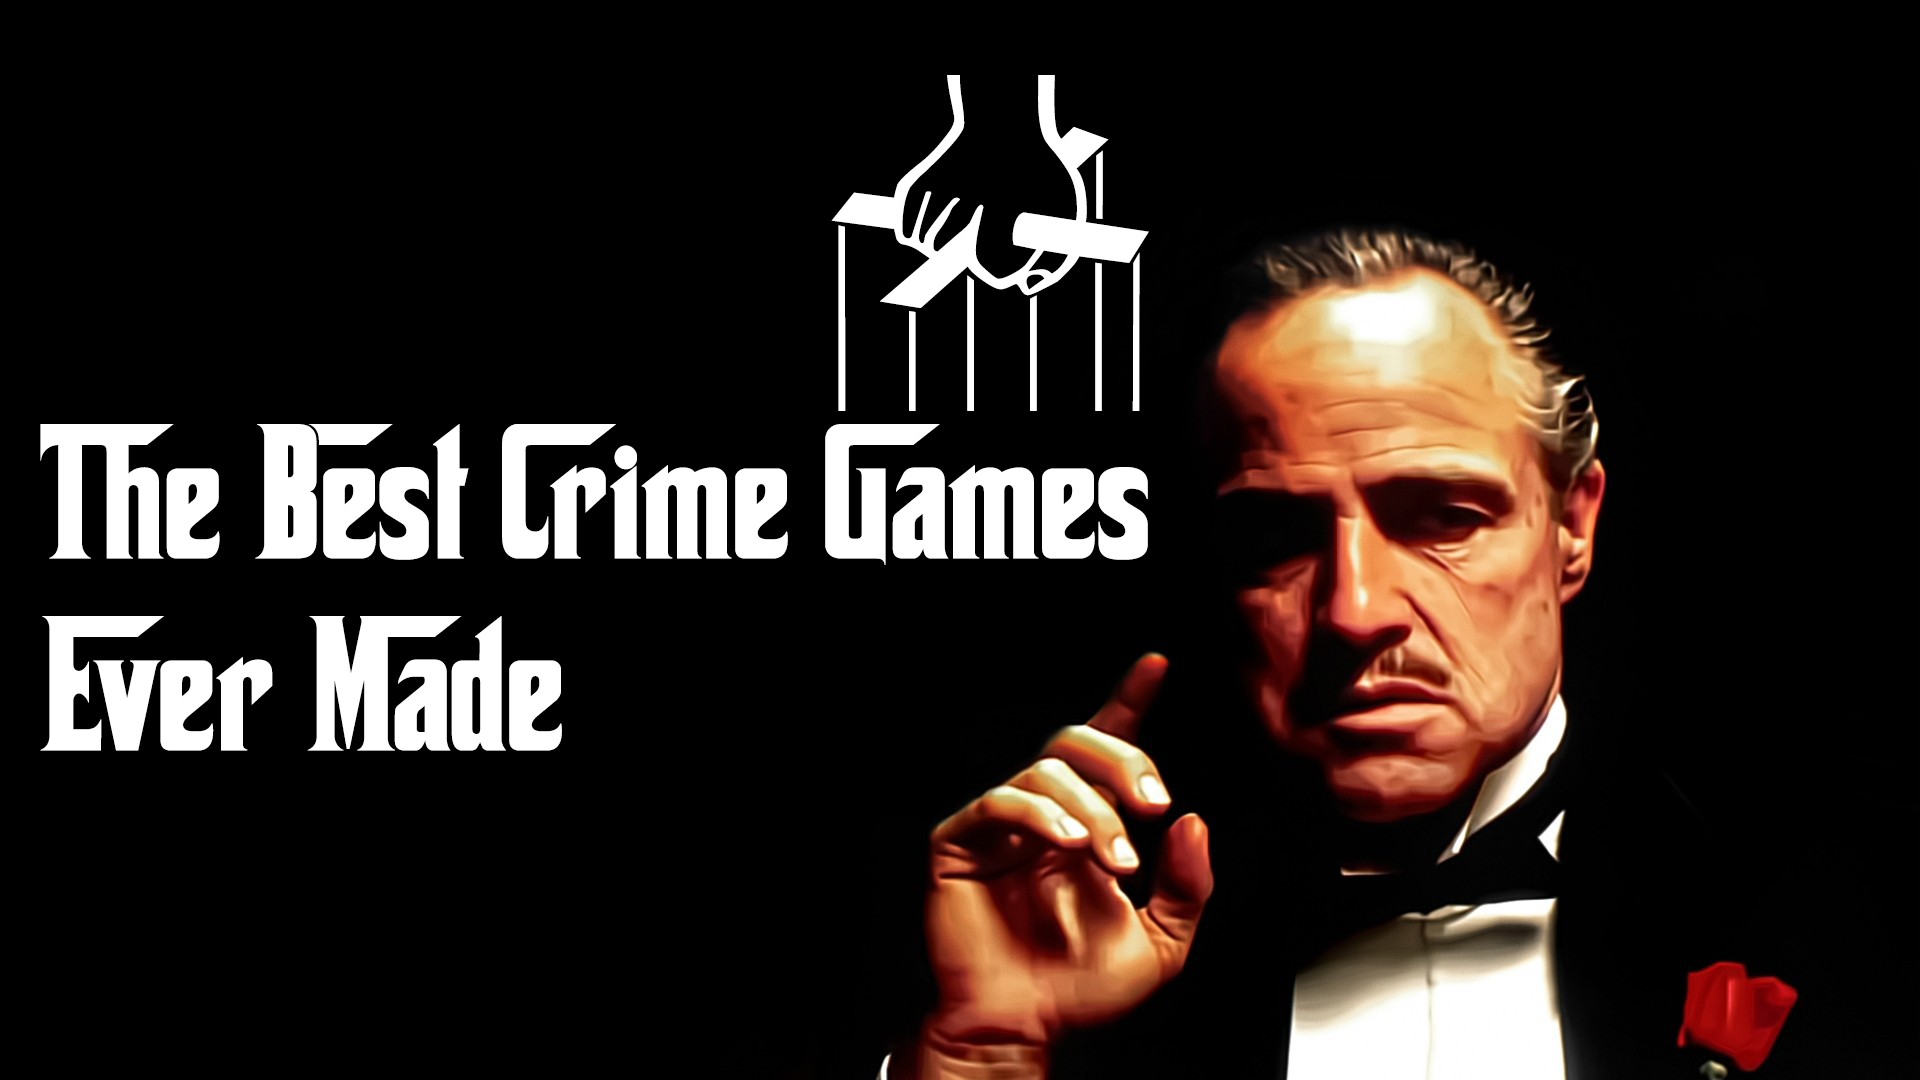 Spreek uit Beraadslagen Habitat The 30 Best Crime Games Ever Made - Gameranx